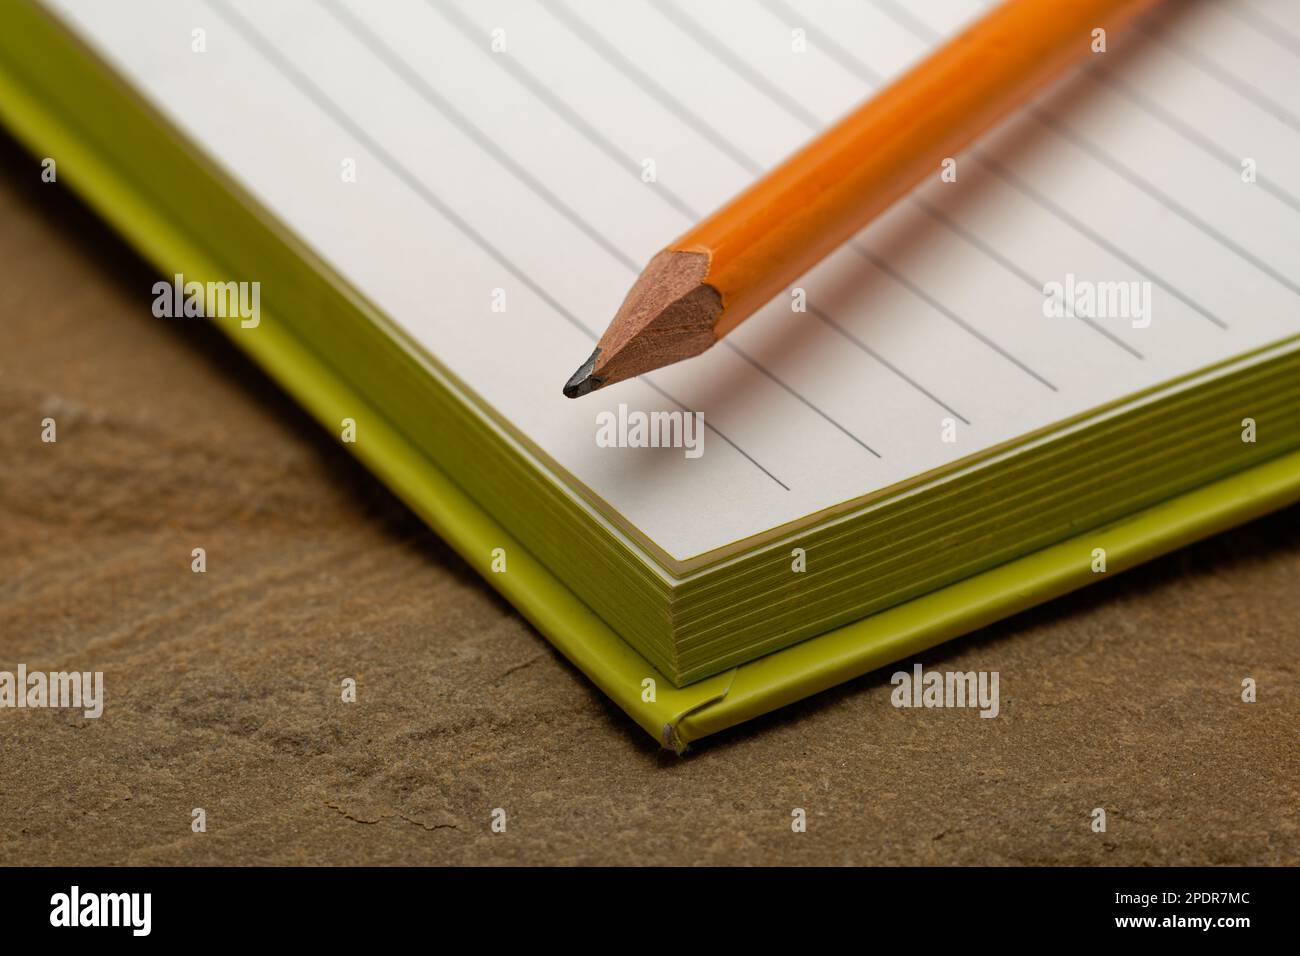 Un carnet doublé avec un crayon. Prêt à prendre des notes, à esquisser des idées et à rédiger des plans. Crayon et papier à portée de main. Banque D'Images